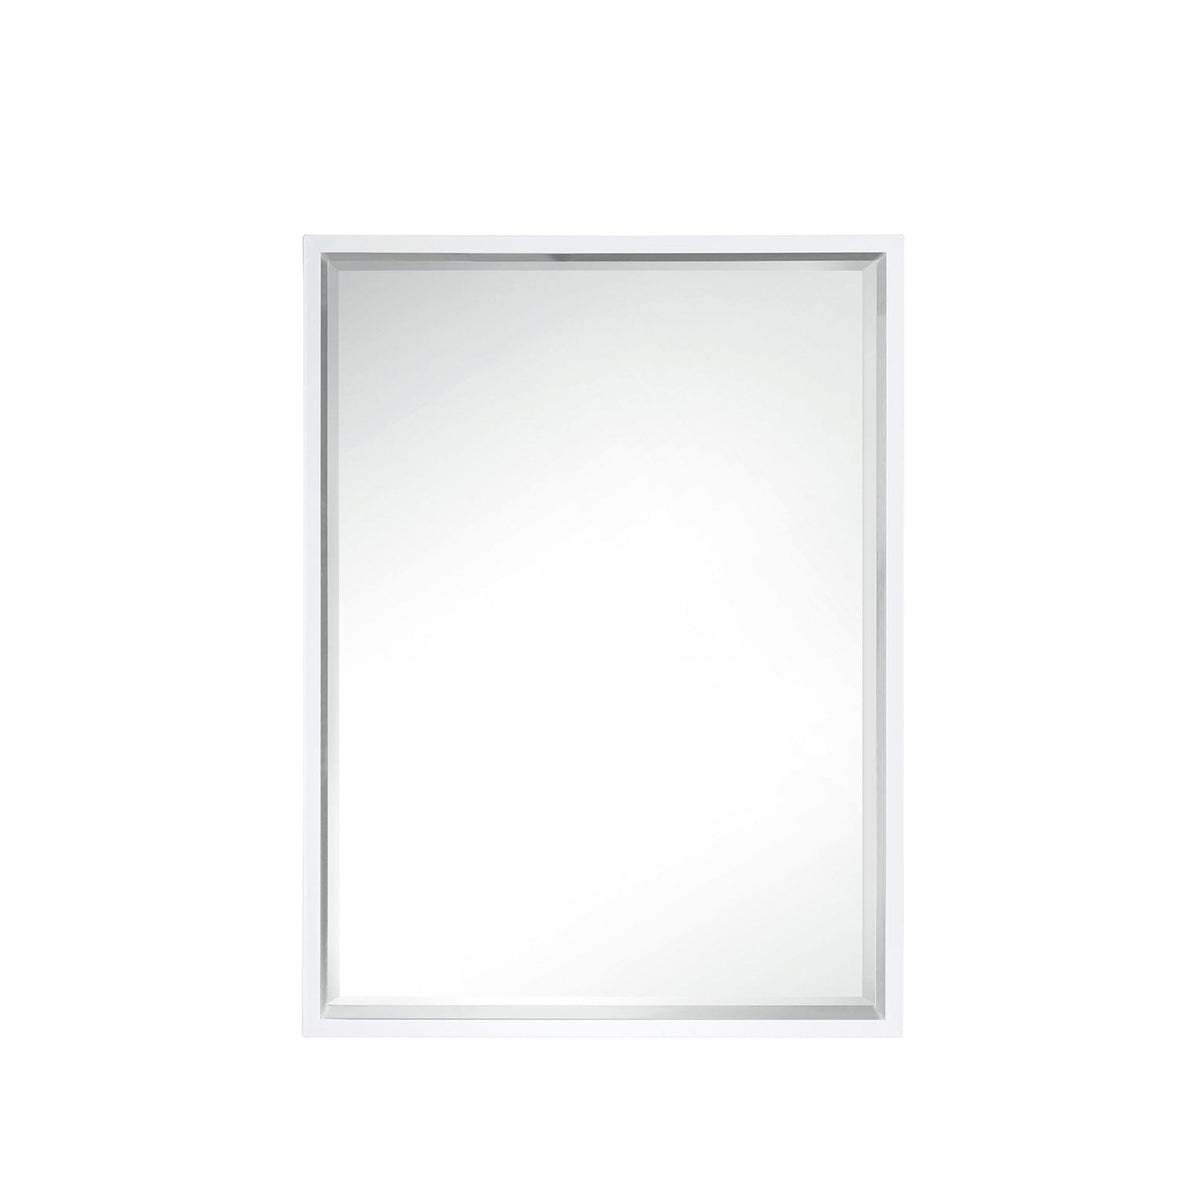 23.6" Milan Rectangular Cube Mirror, Glossy White